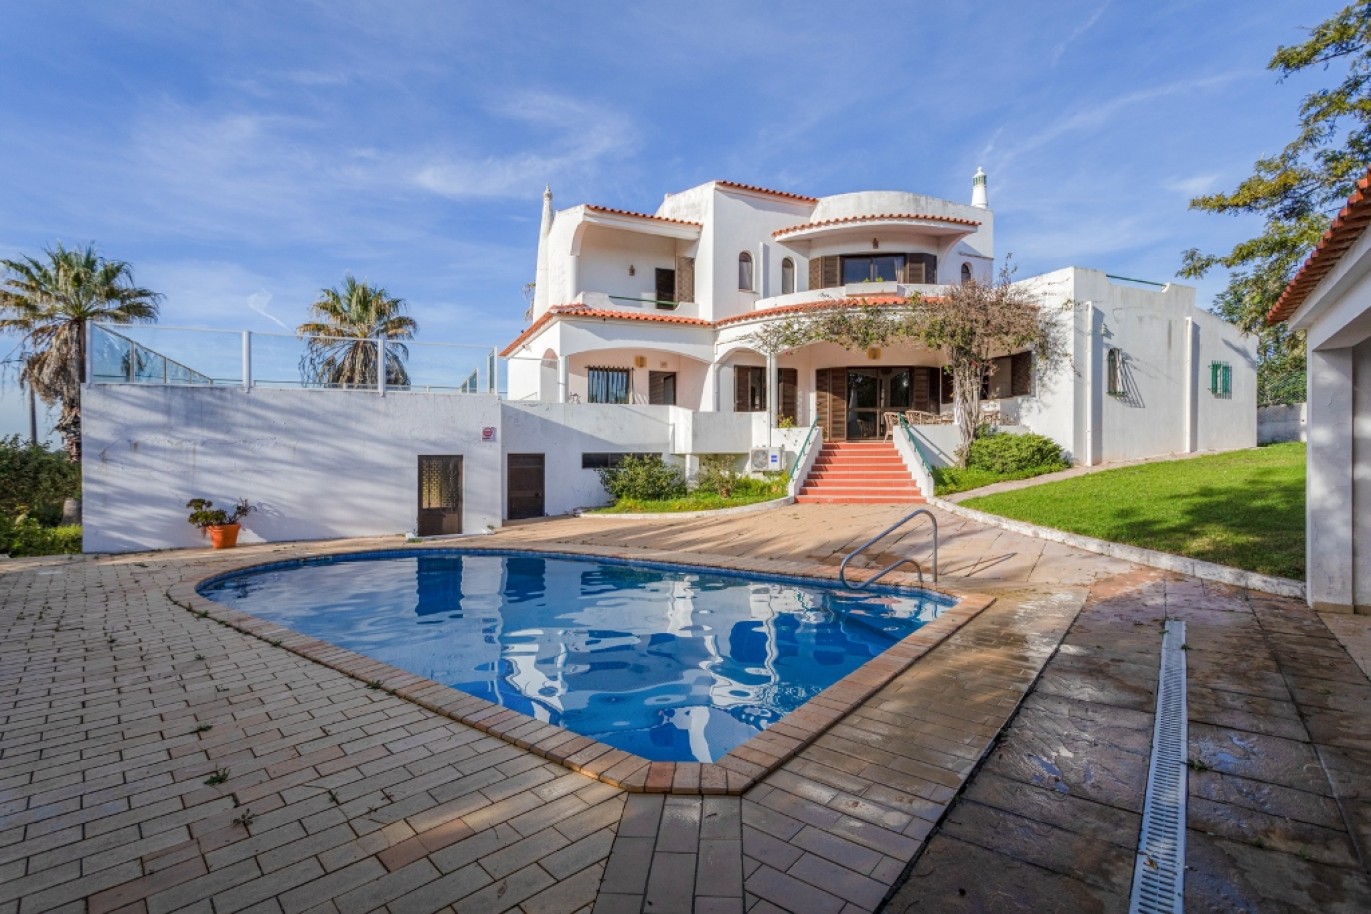 Moradia V4 com piscina em Albufeira, Algarve_252911